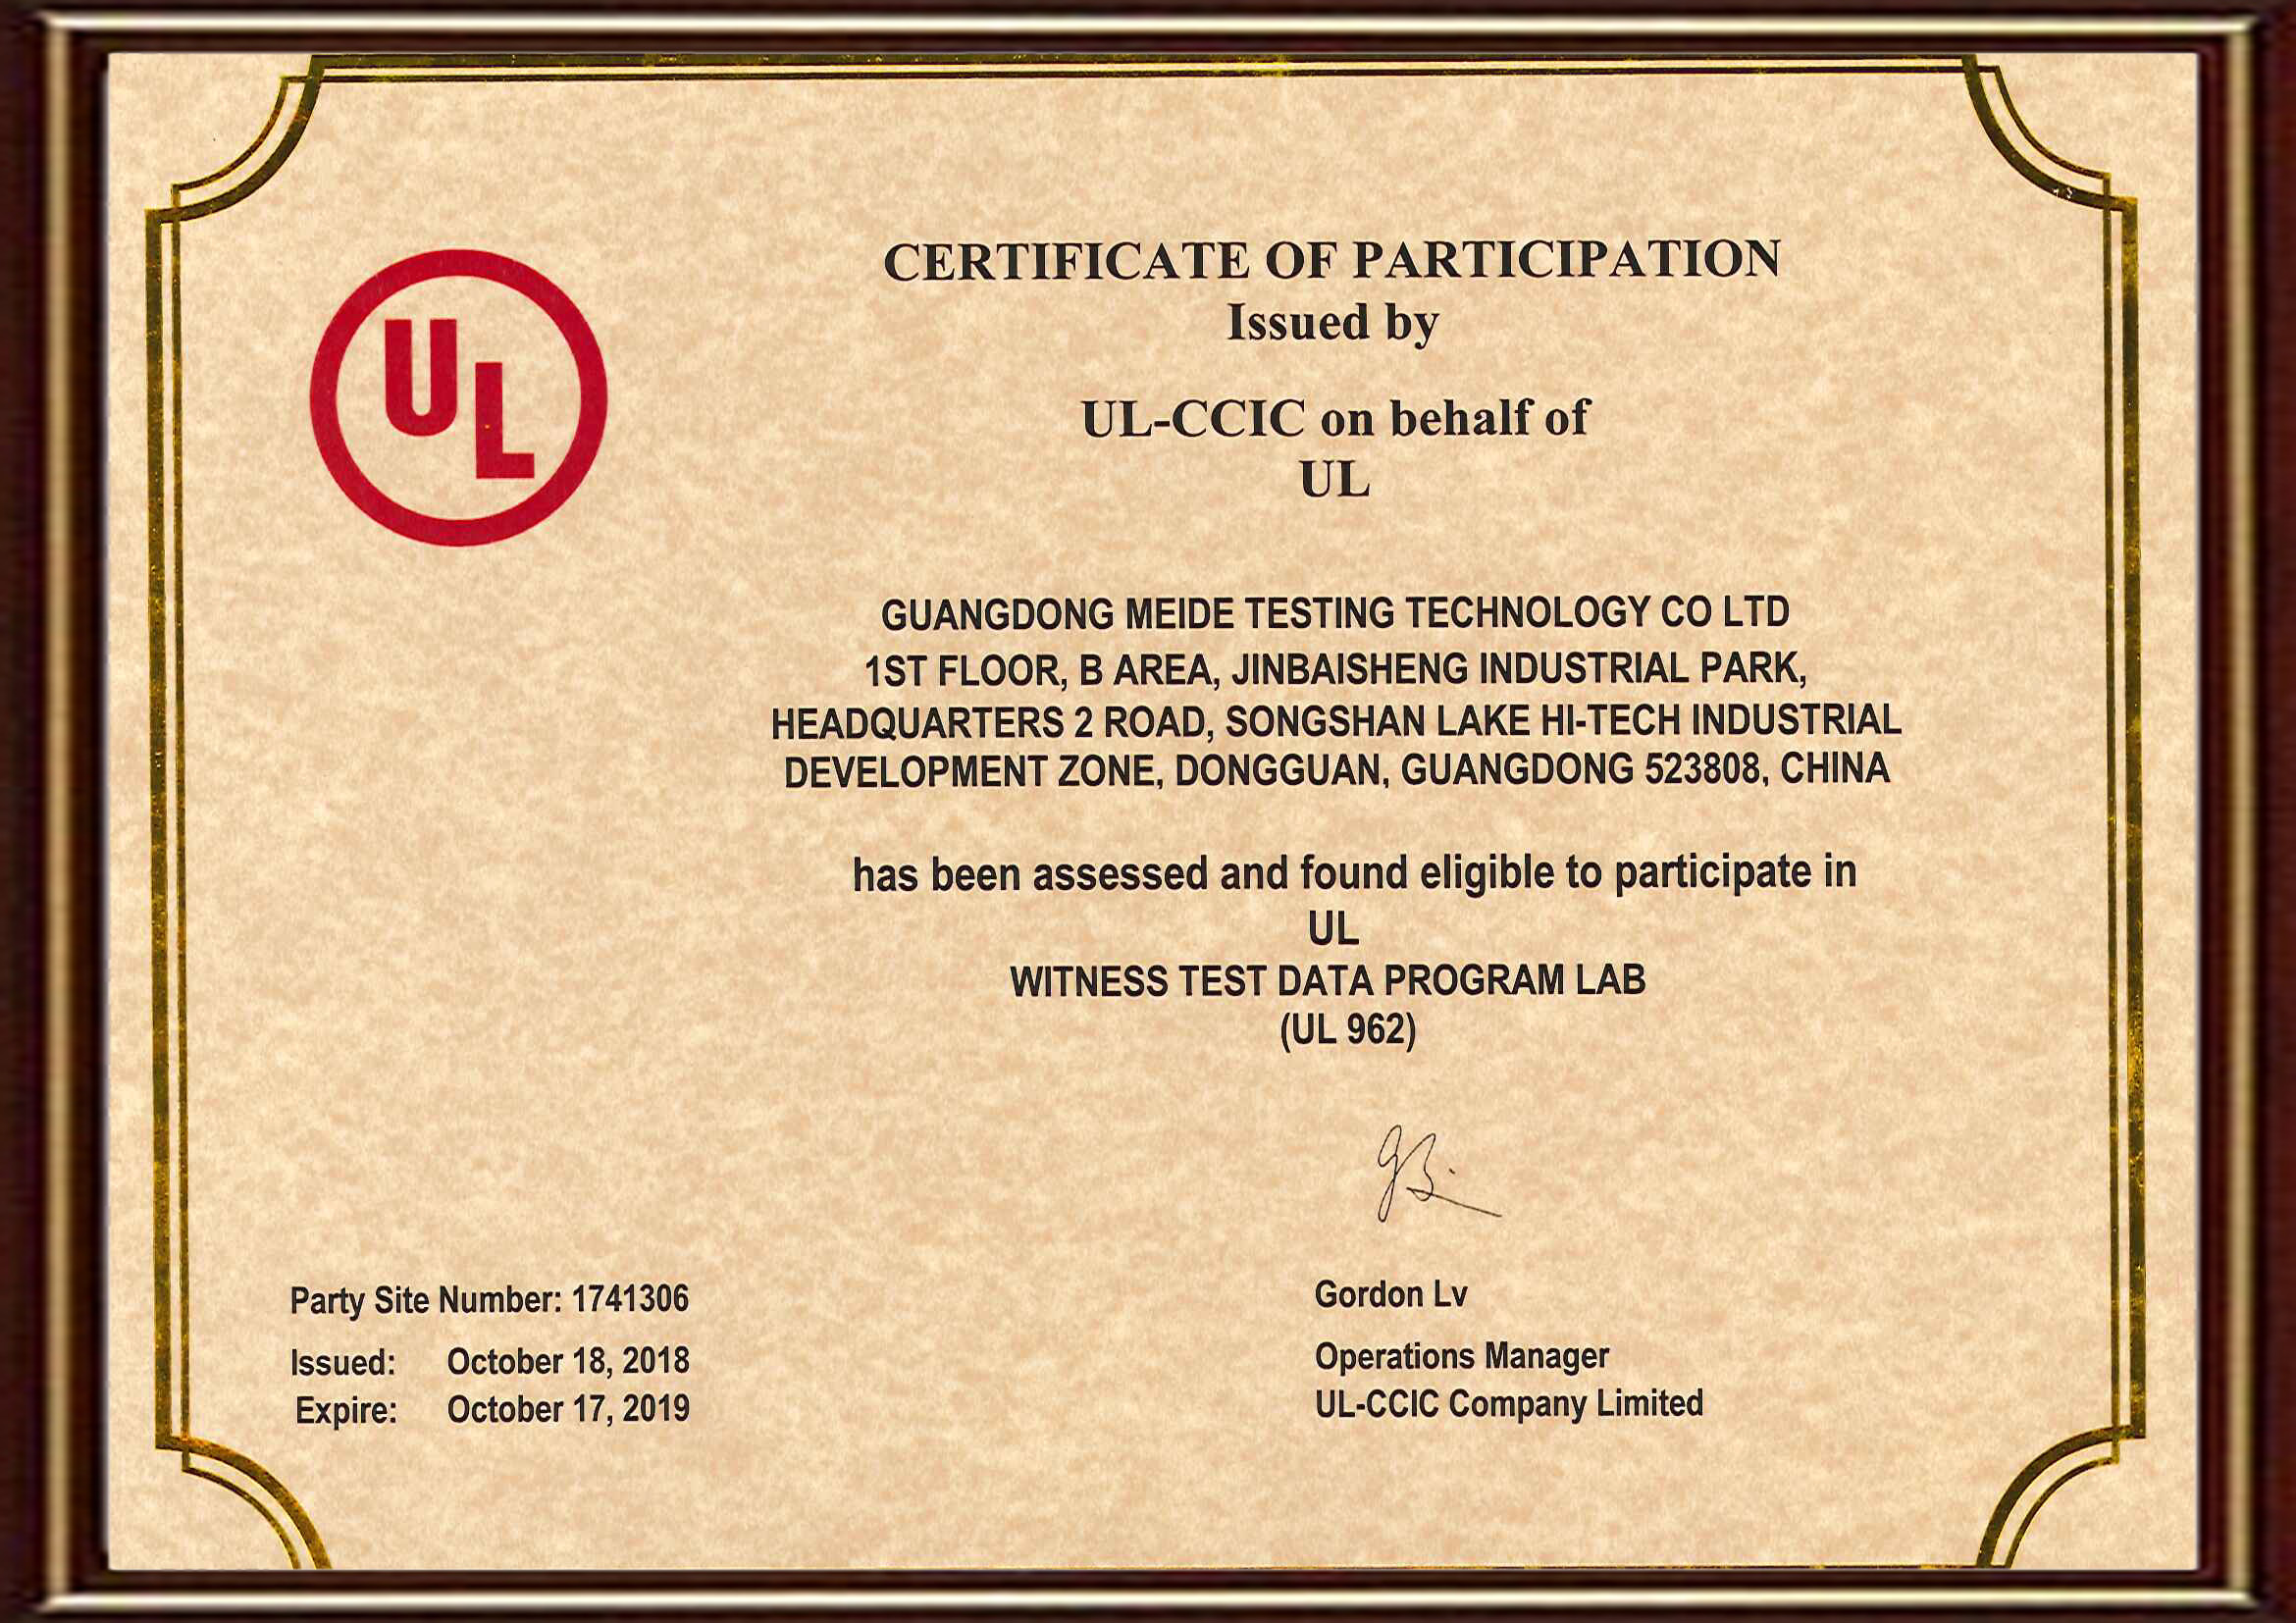 热烈祝贺美德检测获得UL授权的UL962的WTDP资质